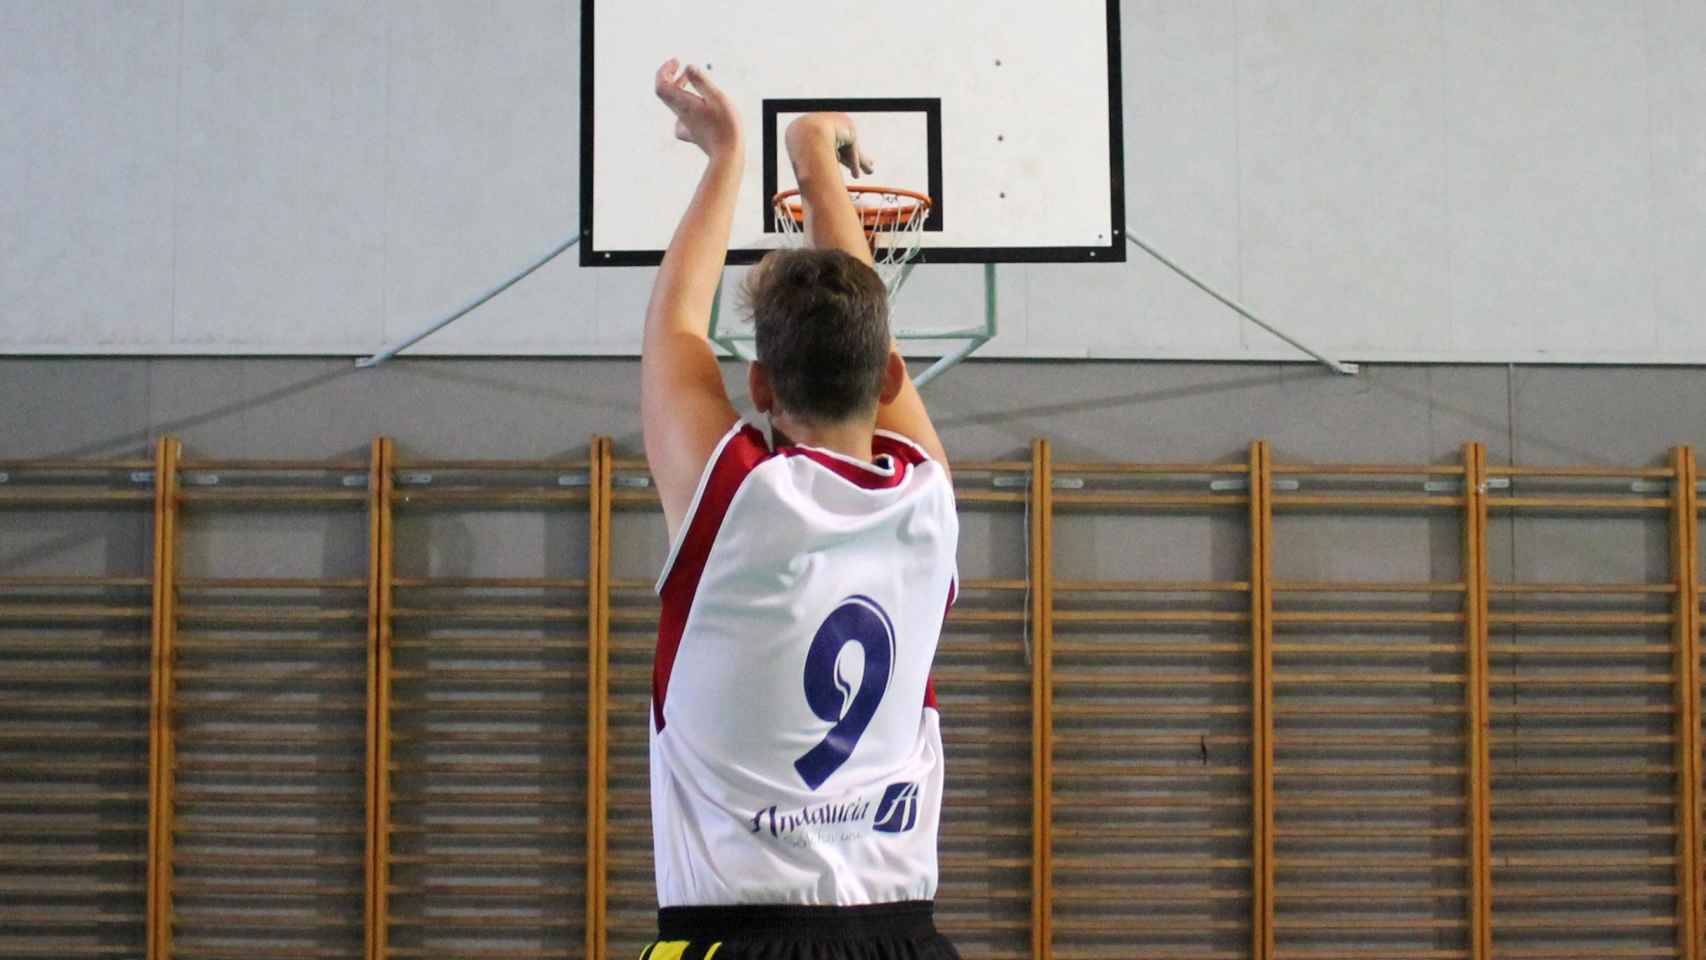 Un chico juega a baloncesto / UNIVERSIDAD DE GRANADA